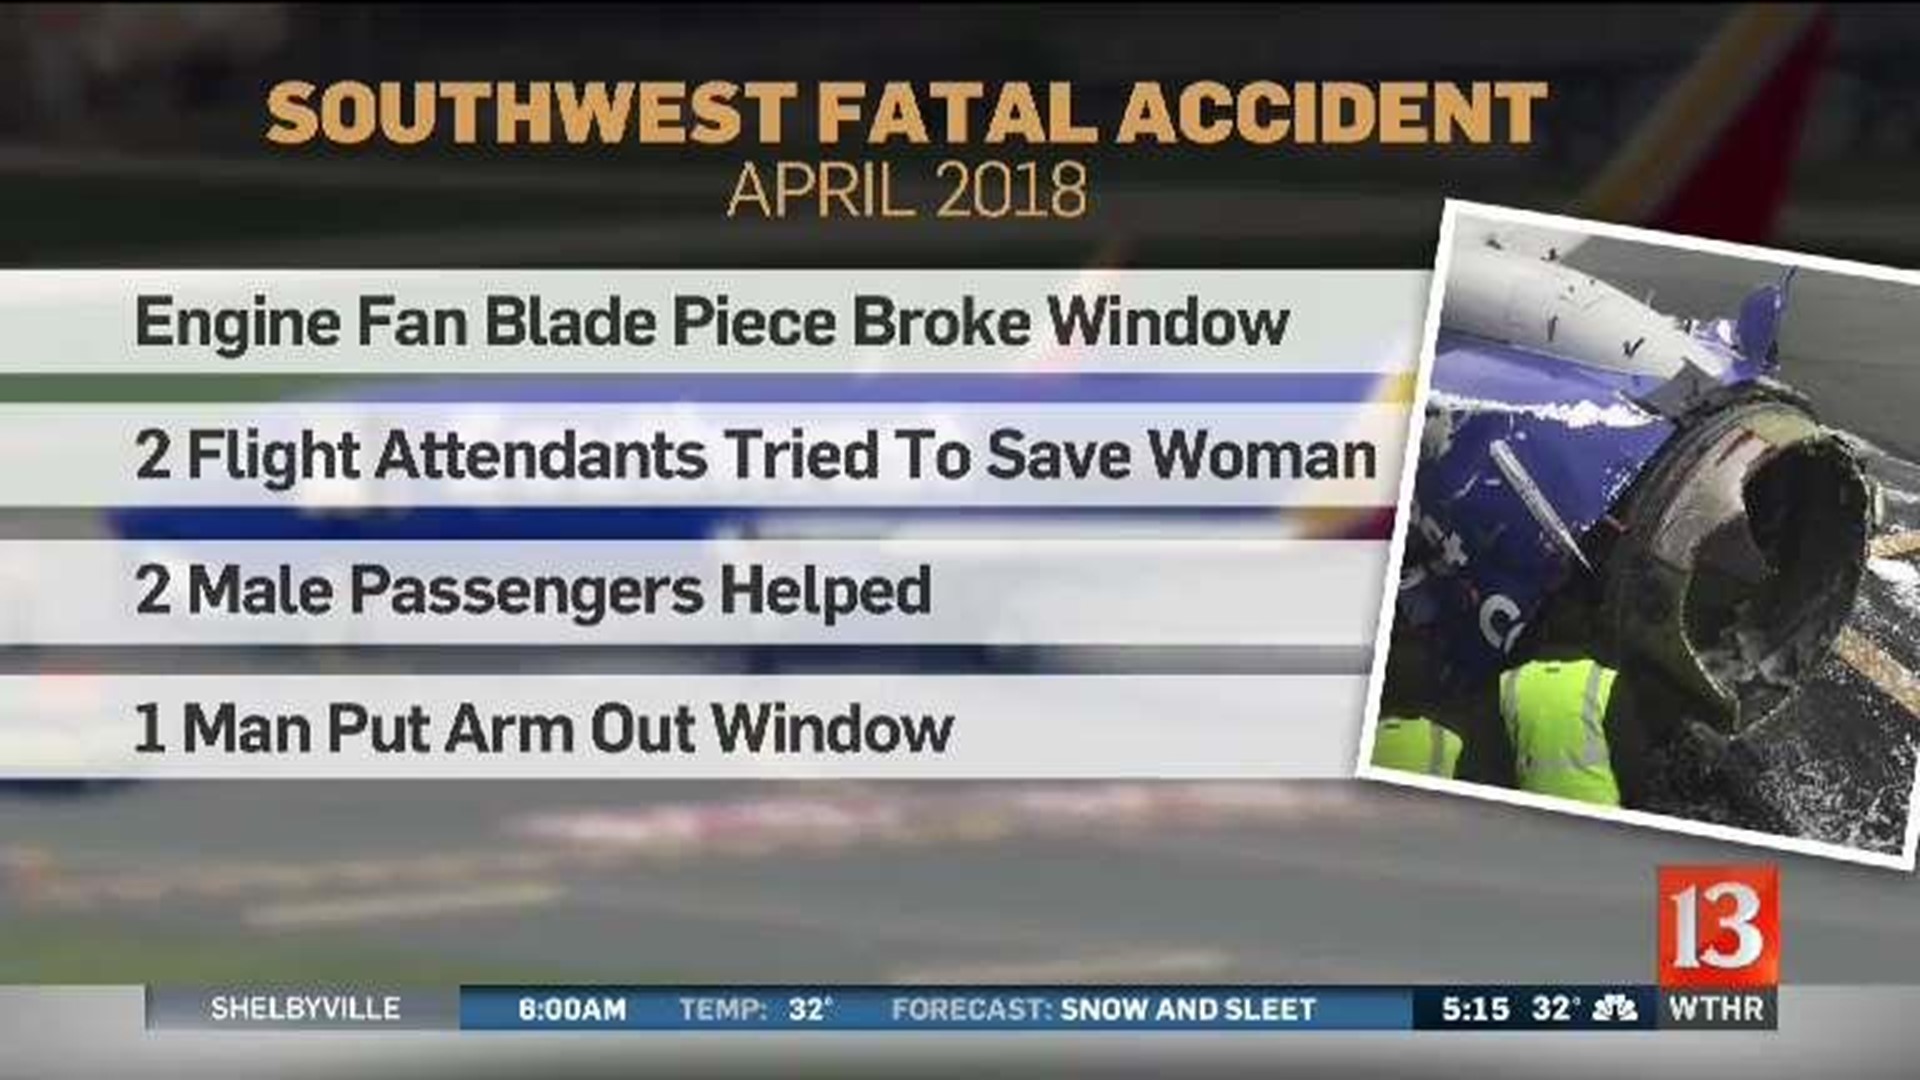 Southwest fatal accident details